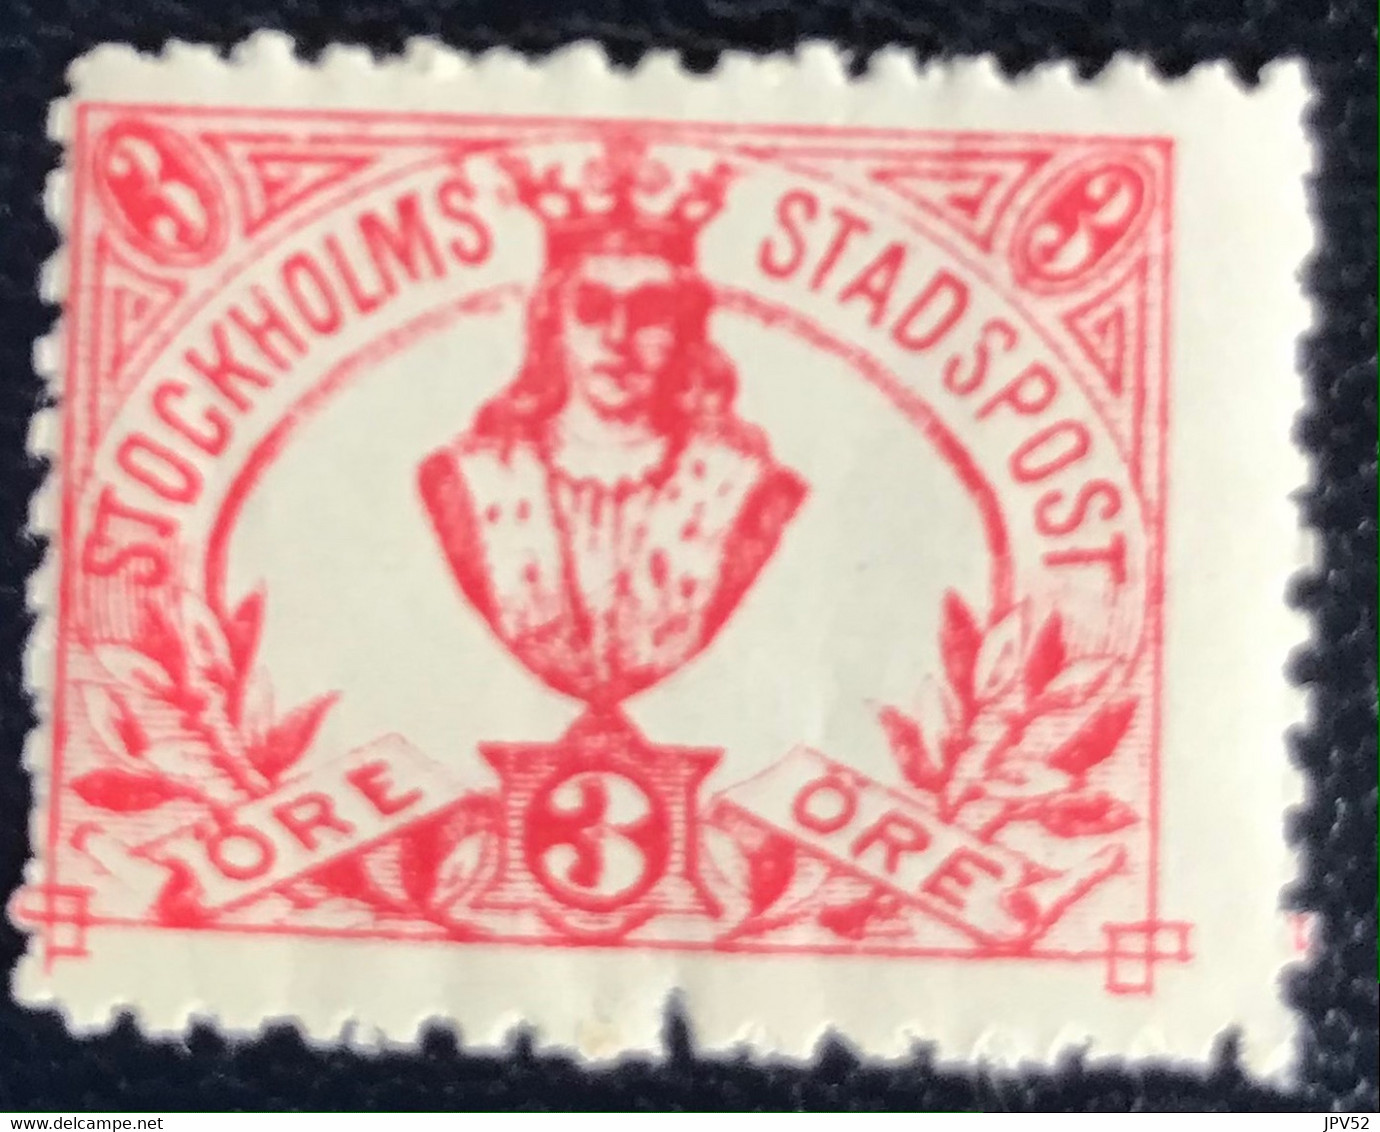 Sverige - Sweden - W1/27 - MNH - 1889 - Stockholms Stadspost - Local Post Stamps